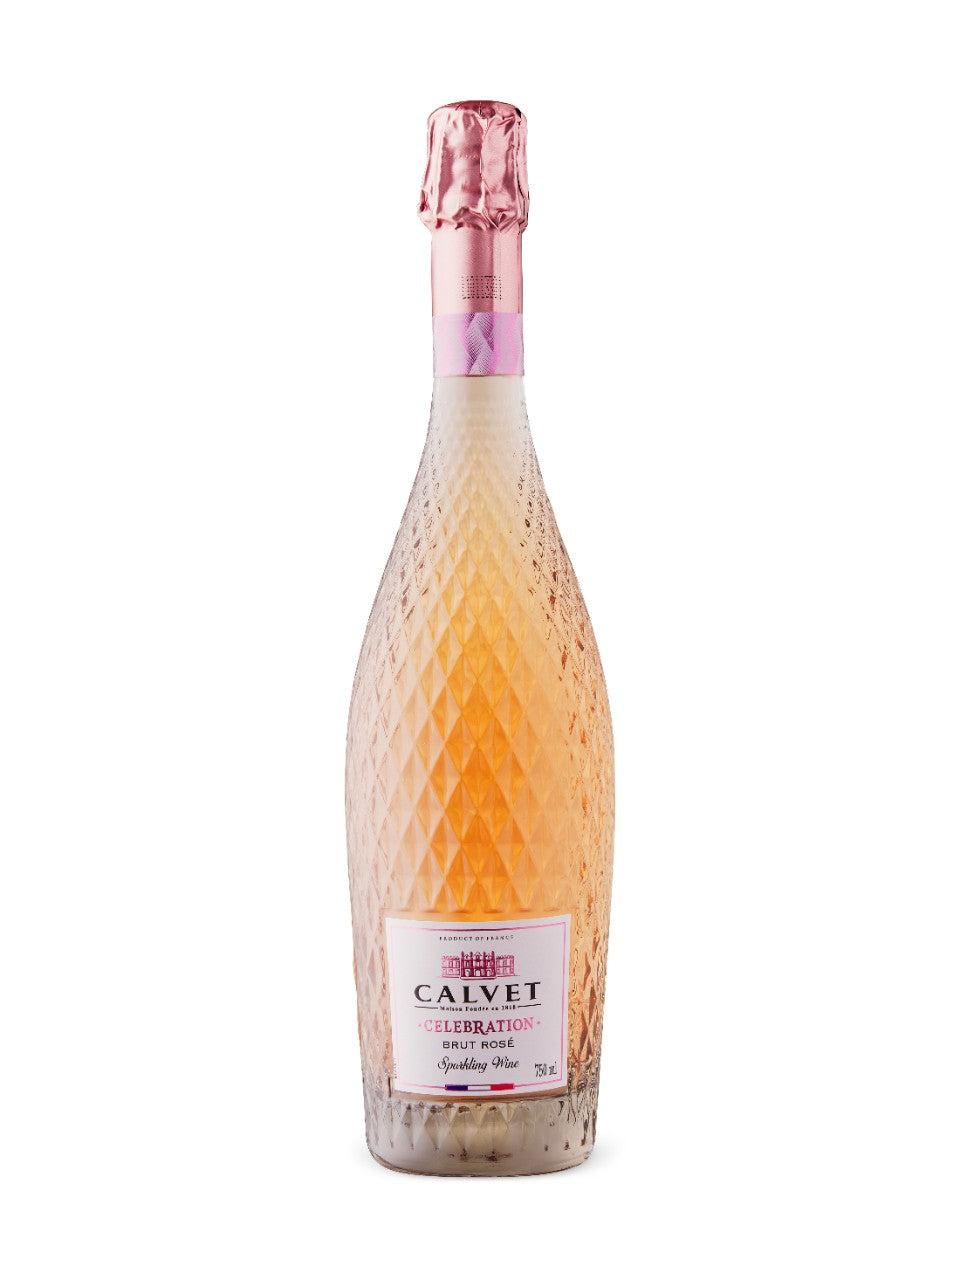 Calvet Brut Celebration Rose 750 ml bottle